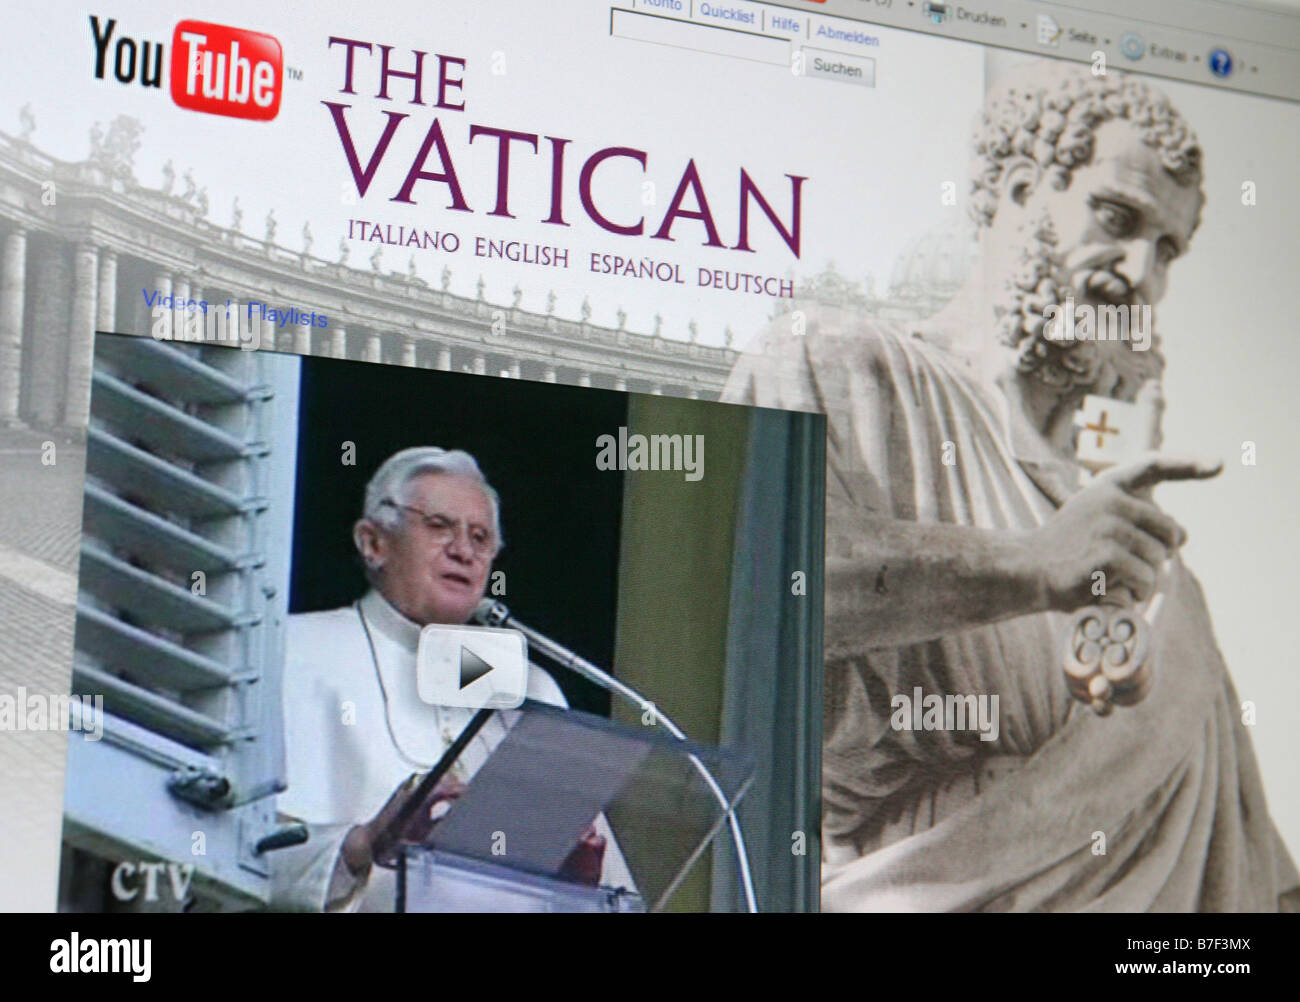 Capture d'écran de la plate-forme internet vaticans à youtube montre le Pape Benedikt XVI. Banque D'Images